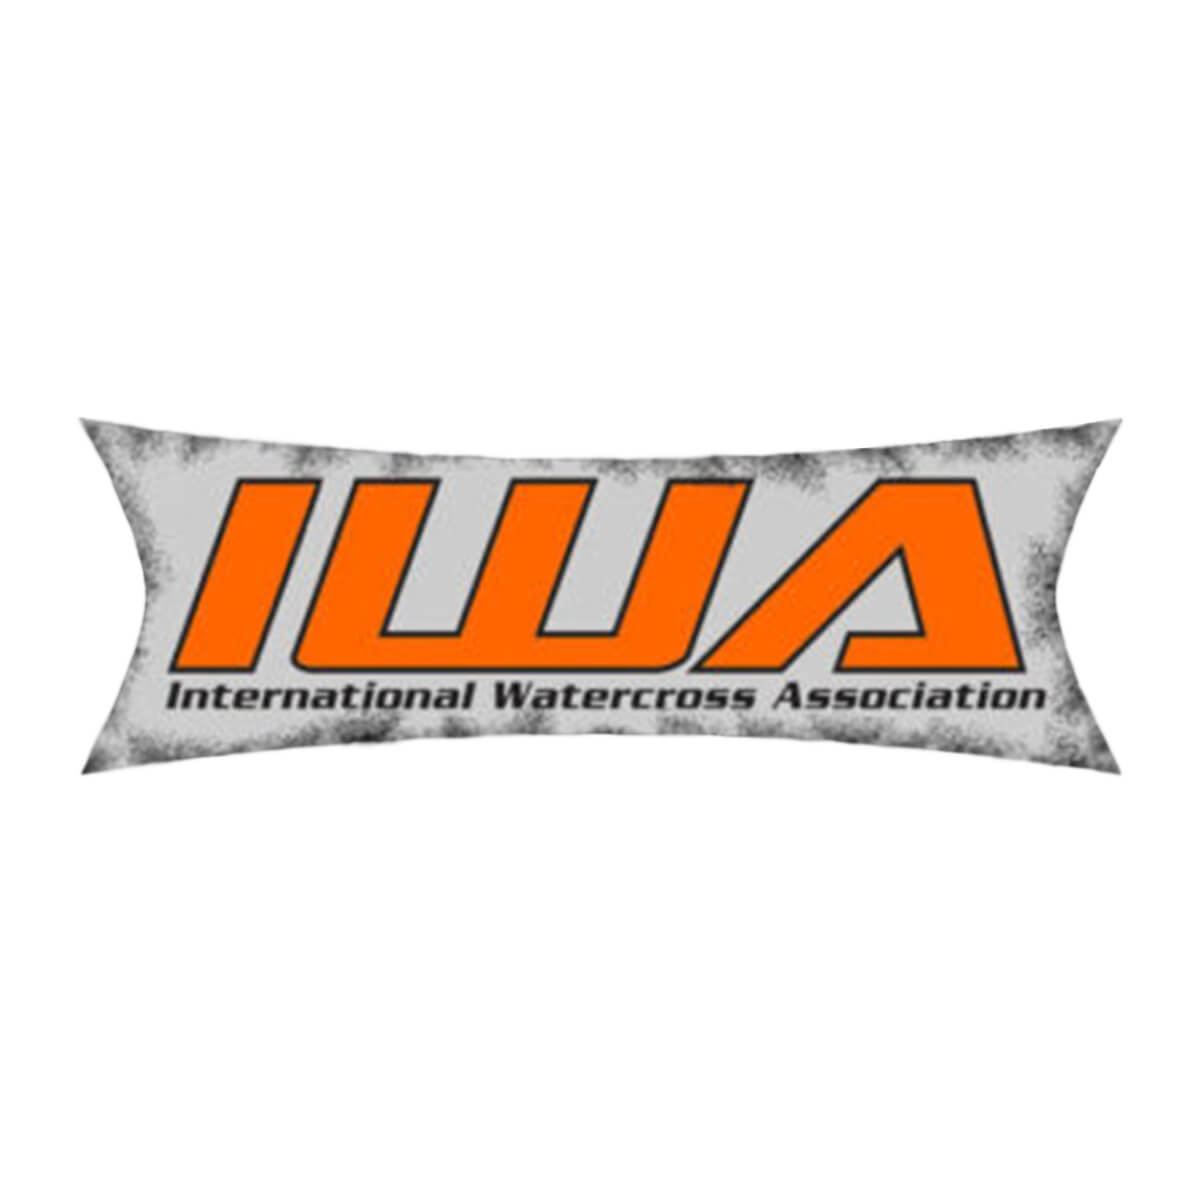 International Watercross Association